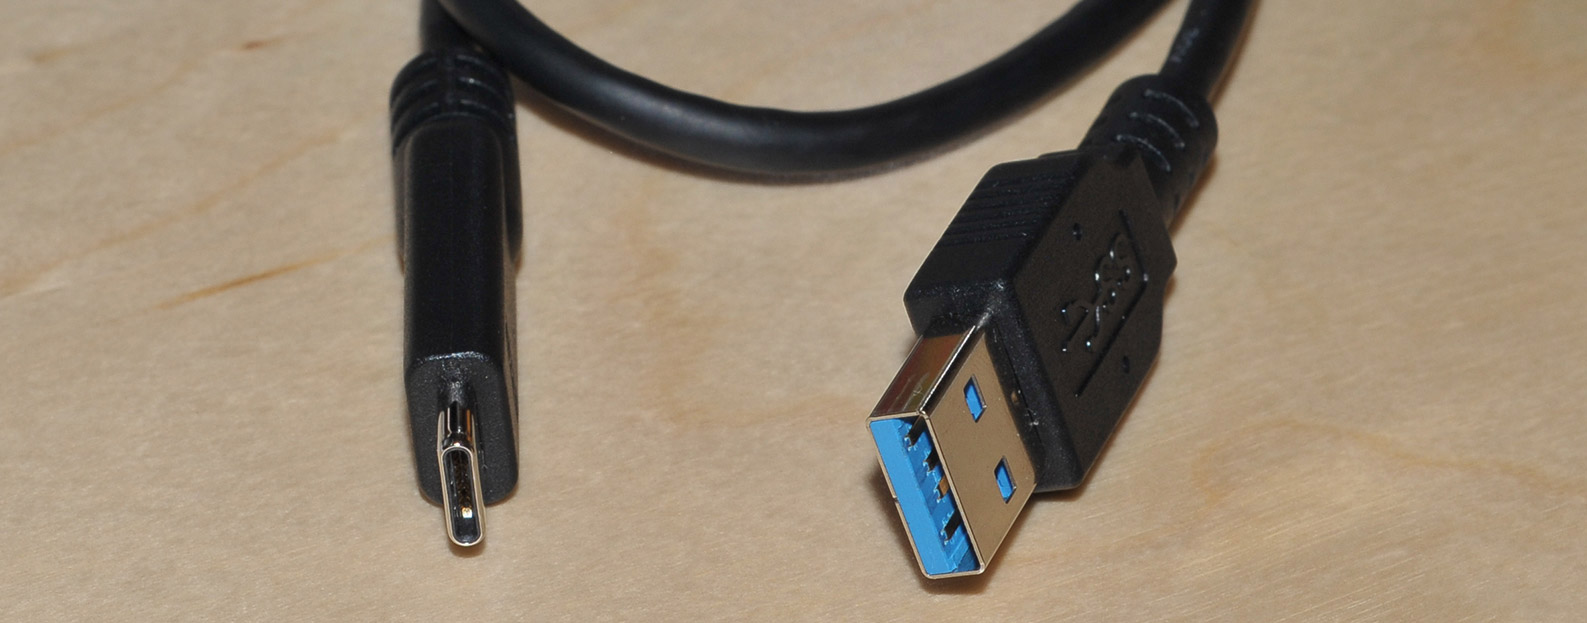 Asus Z97-A/USB 3.1 : l'USB 3.1 Gen2 en pratique - version imprimable 